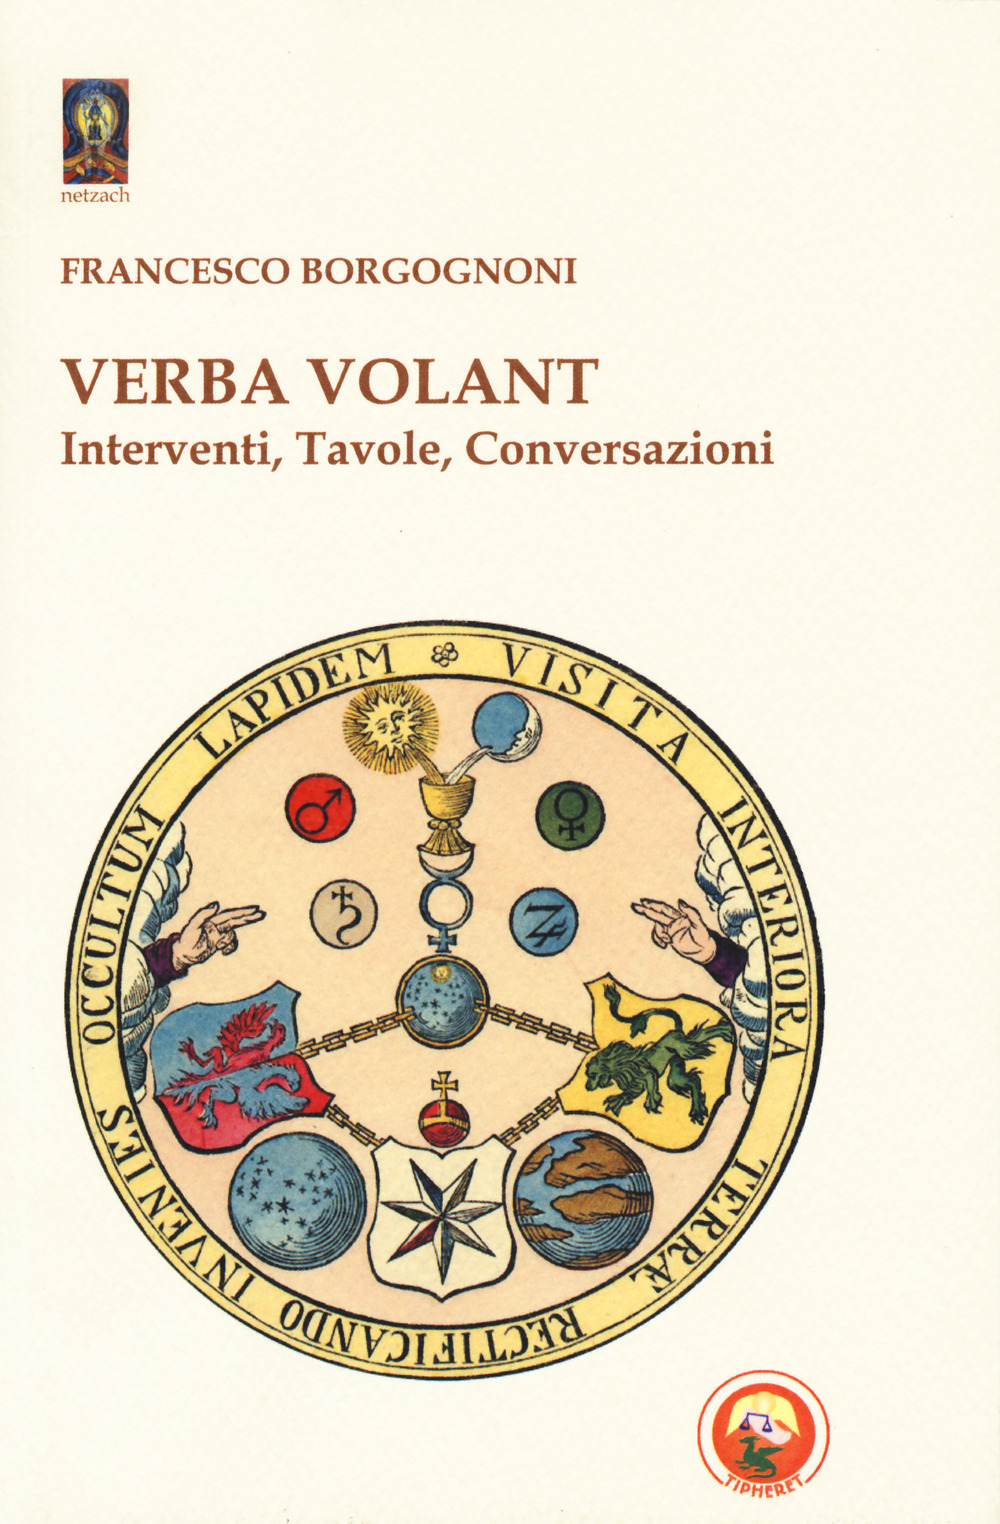 Image of Verba volant. Interventi, Tavole, conversazioni